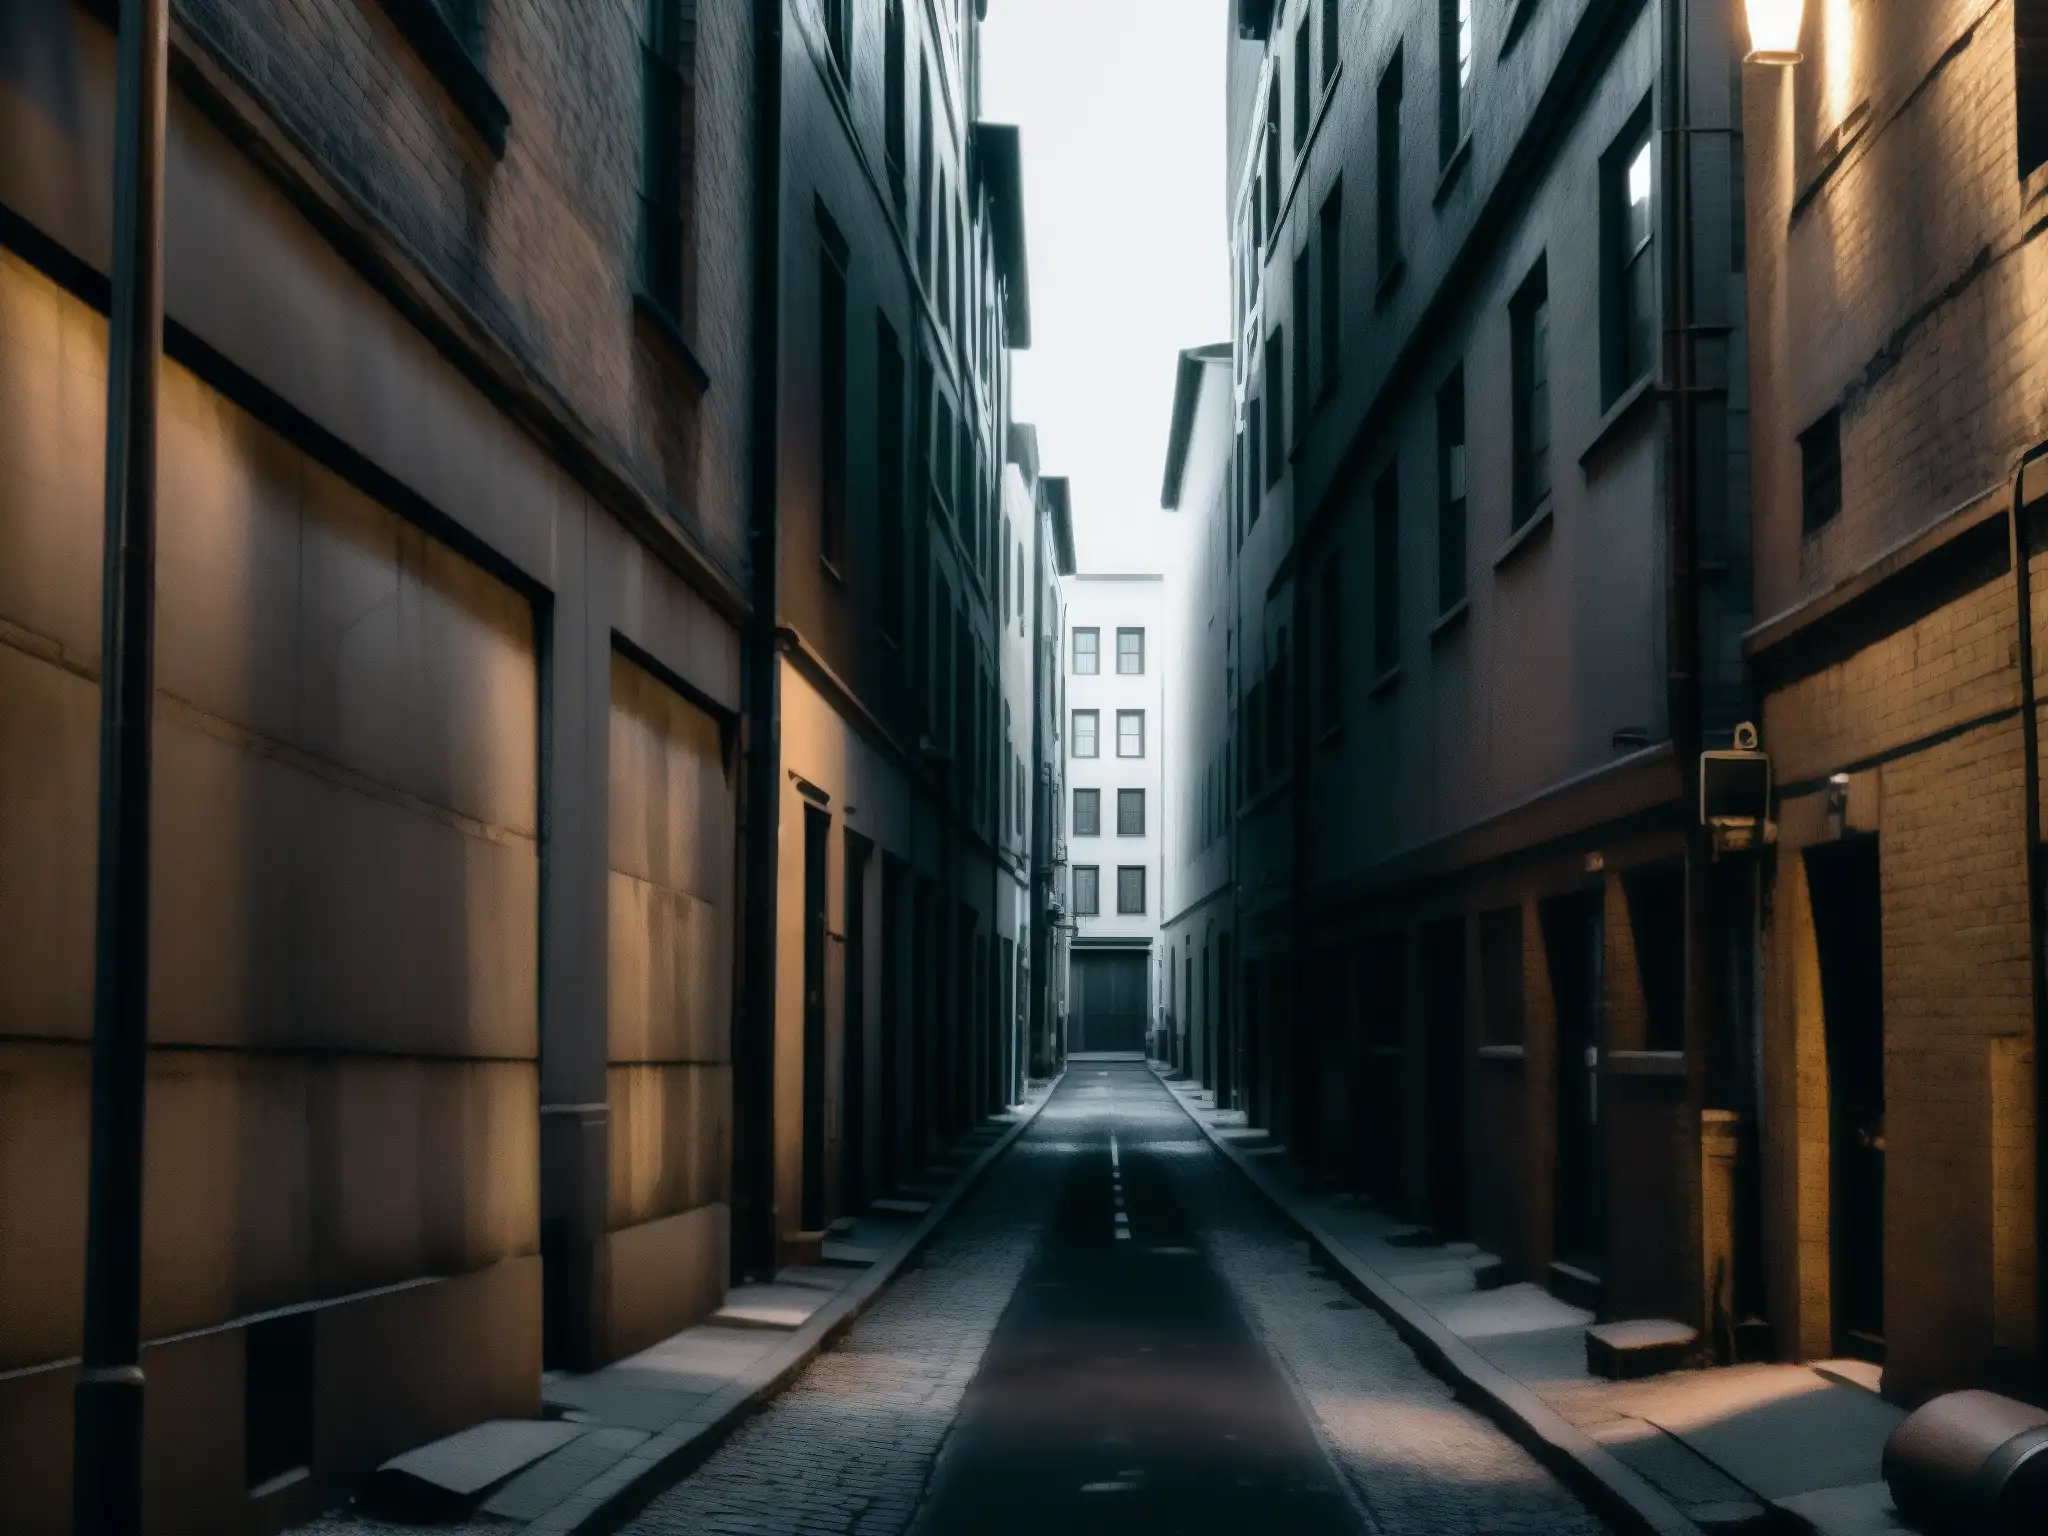 Hombres de Negro leyenda urbana: Un callejón desolado y sombrío entre altos edificios, iluminado por una solitaria farola